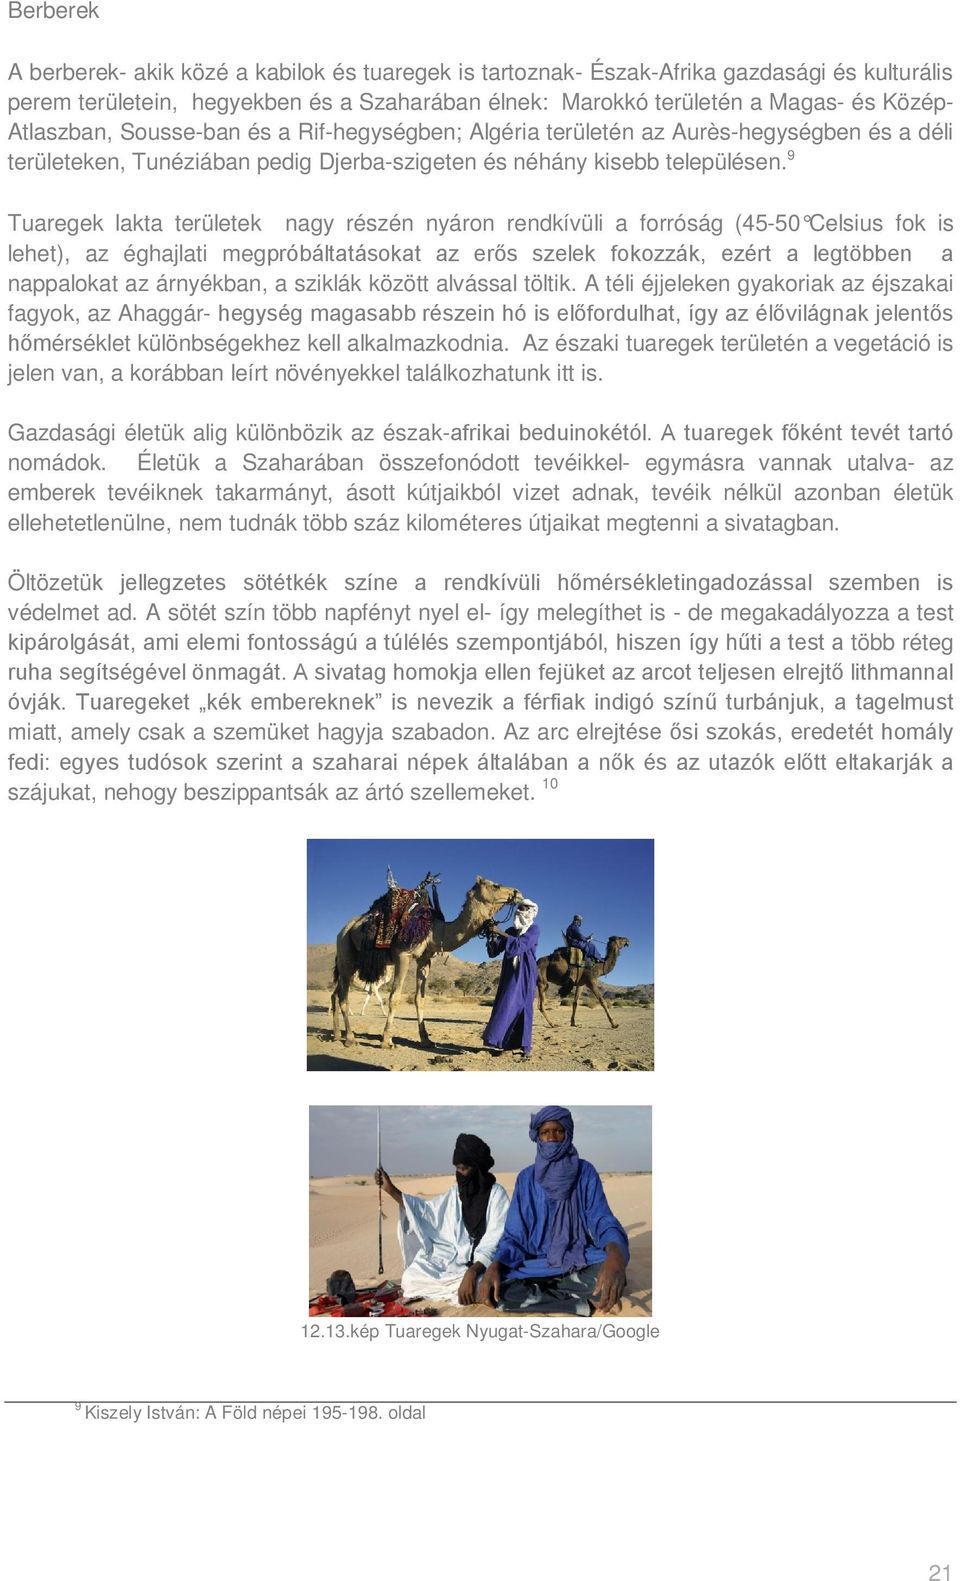 9 Tuaregek lakta területek nagy részén nyáron rendkívüli a forróság (45-50 Celsius fok is lehet), az éghajlati megpróbáltatásokat az erős szelek fokozzák, ezért a legtöbben a nappalokat az árnyékban,